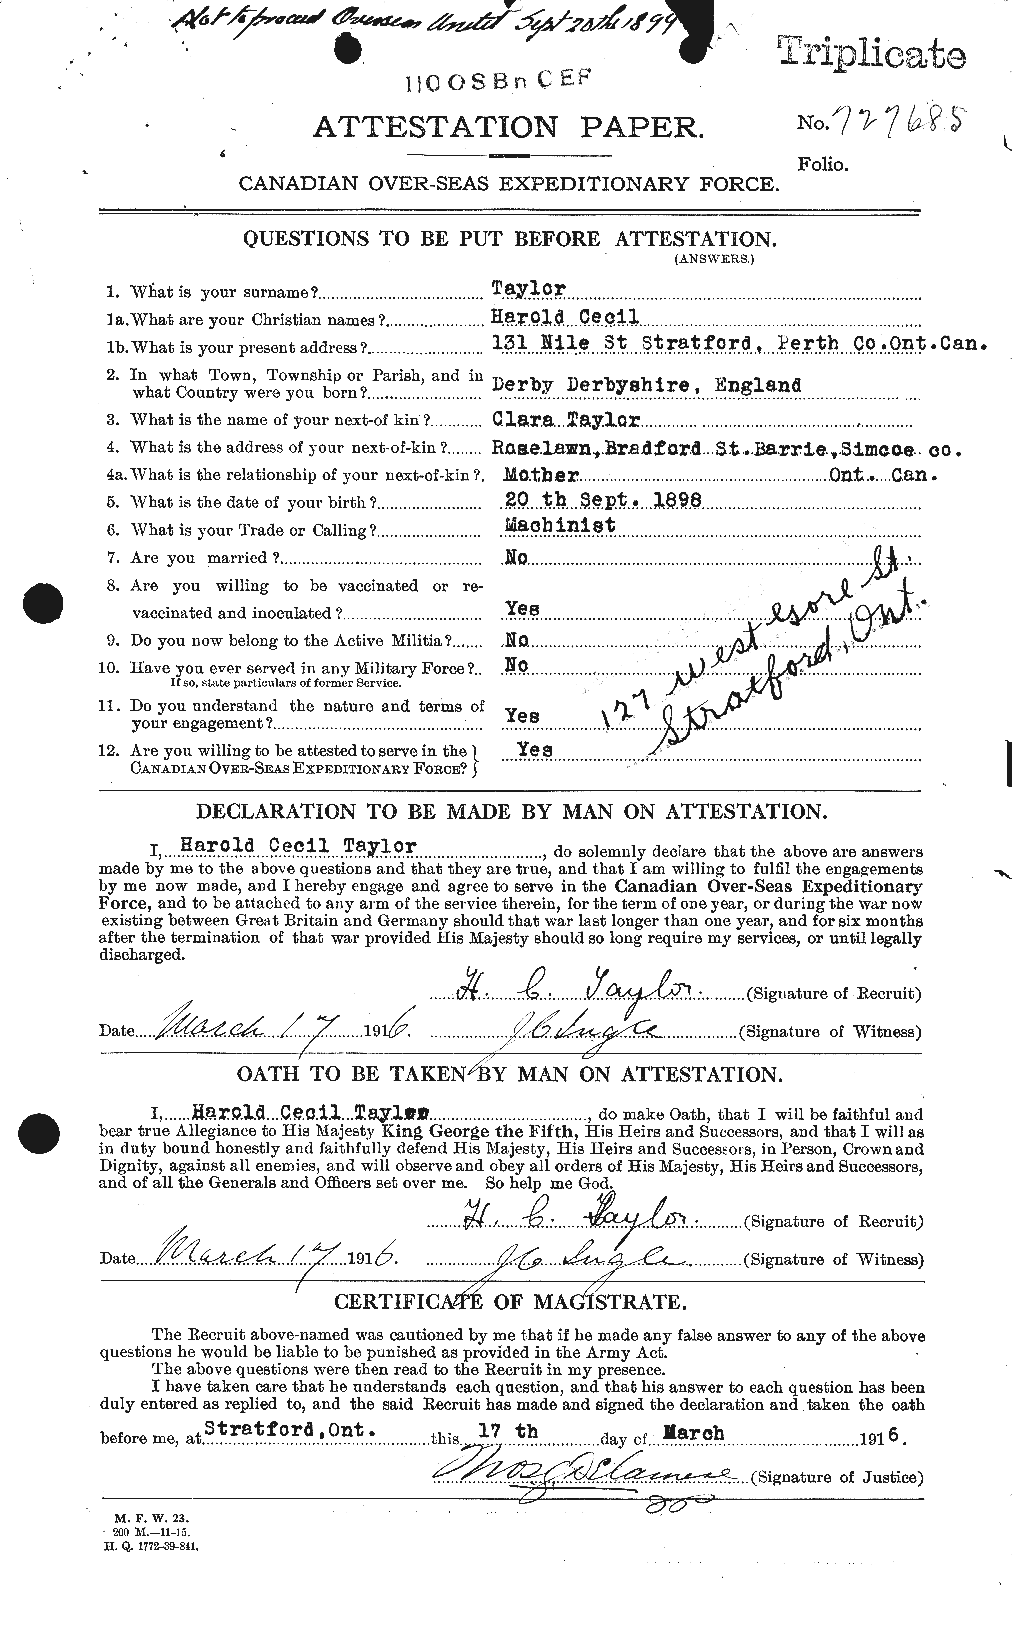 Dossiers du Personnel de la Première Guerre mondiale - CEC 626416a